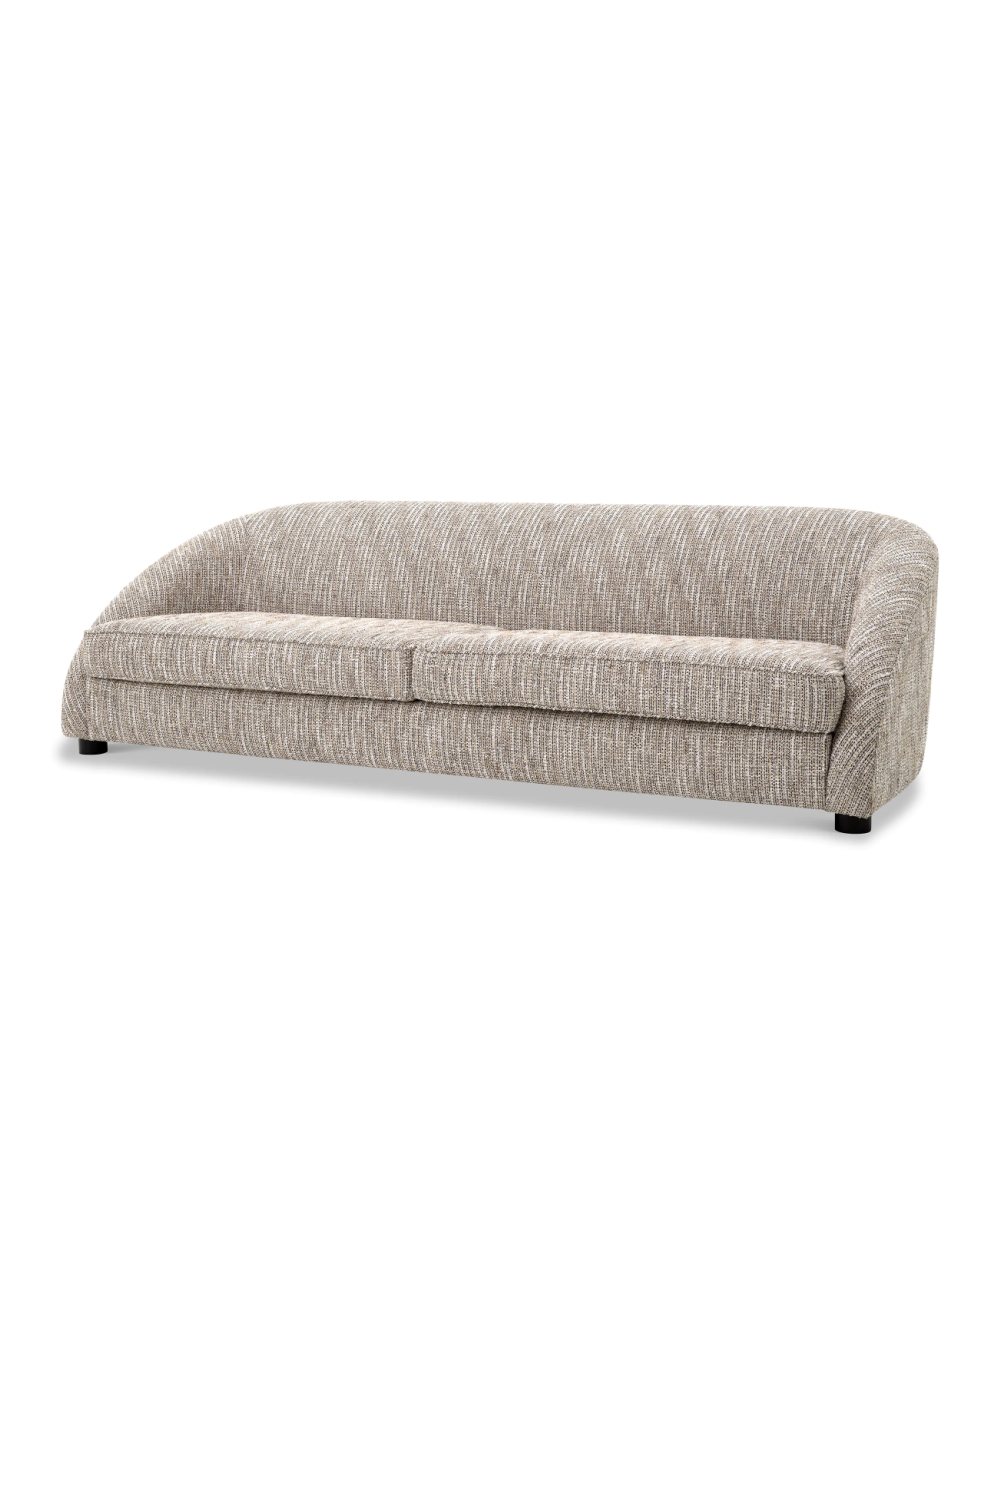 Modern Contoured Sofa | Eichholtz Cruz | Oroa.com